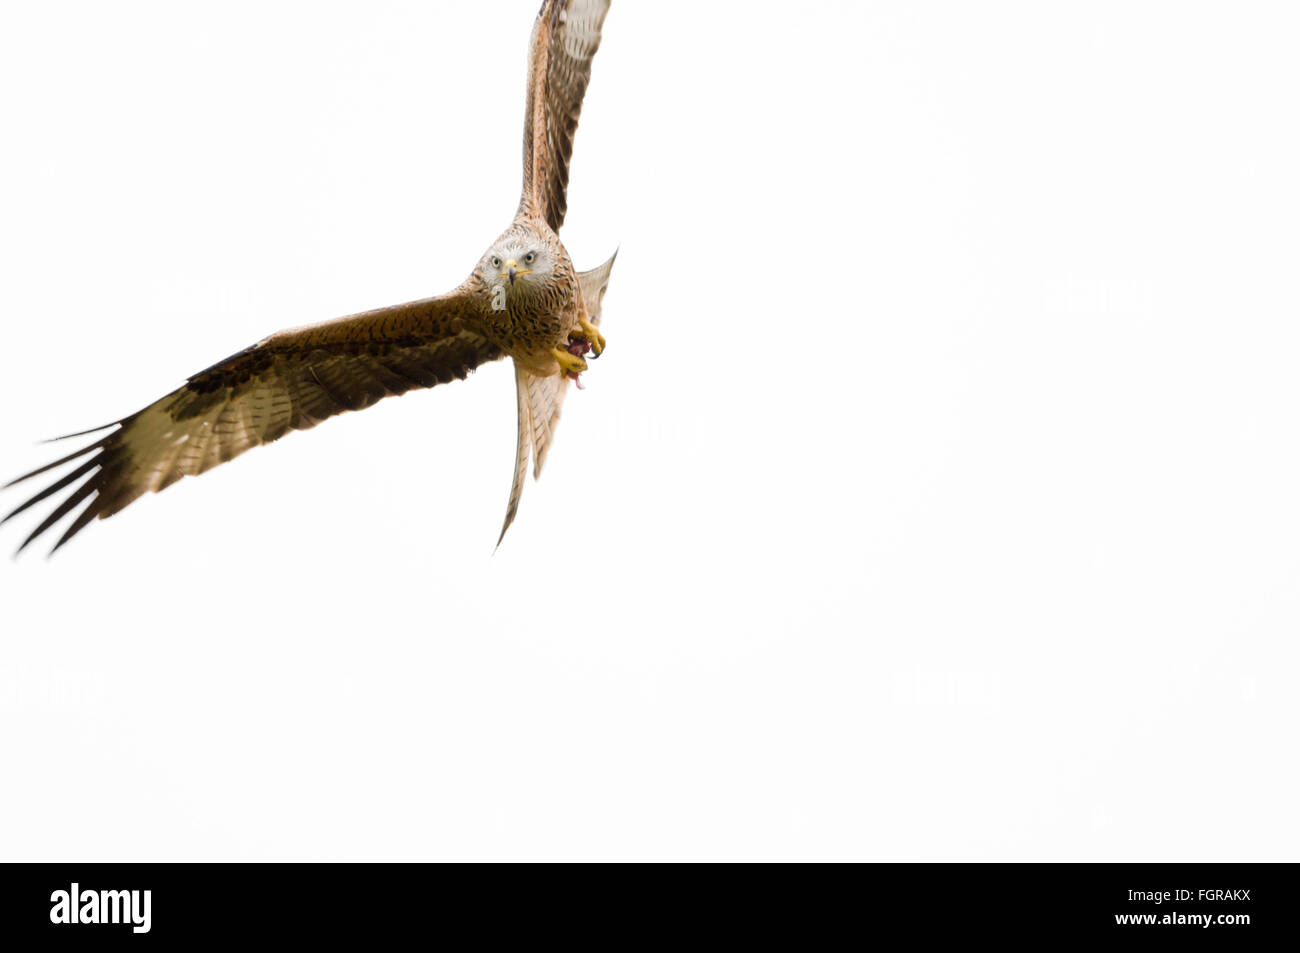 Un cerf-volant rouge unique, Milvus milvus, avec ses ailes étalées prépare des regards pour la nourriture alors qu'il s'éfond contre un ciel d'hiver gris pâle Banque D'Images